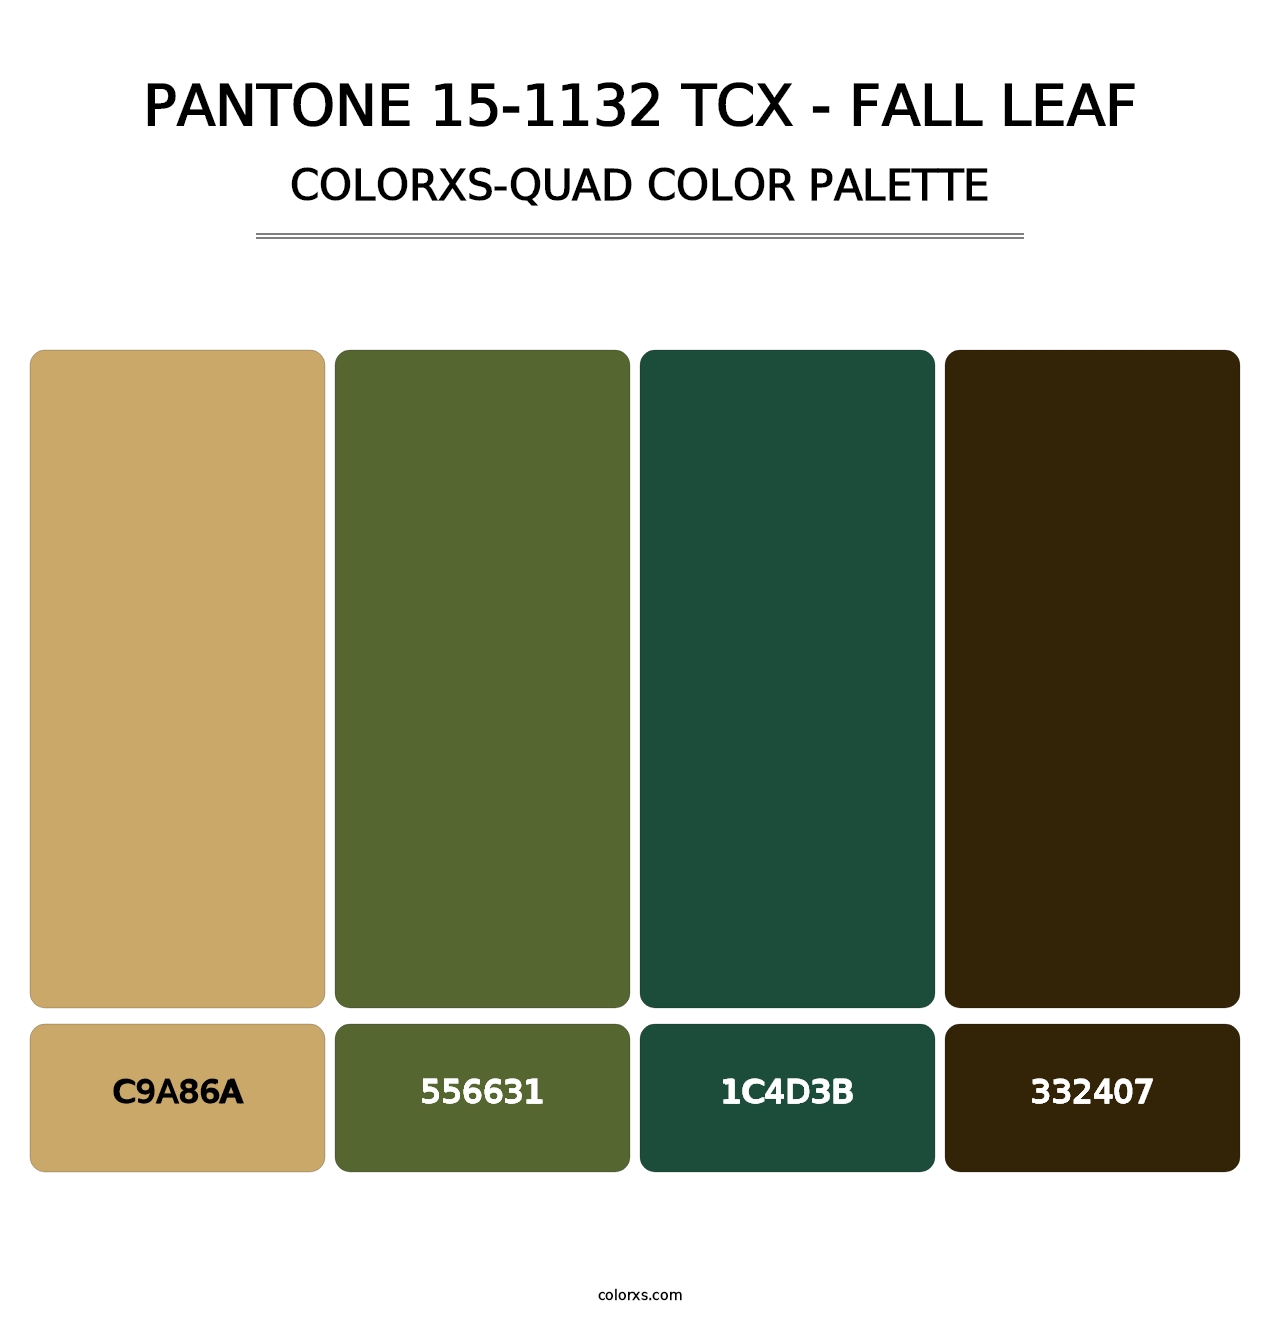 PANTONE 15-1132 TCX - Fall Leaf - Colorxs Quad Palette